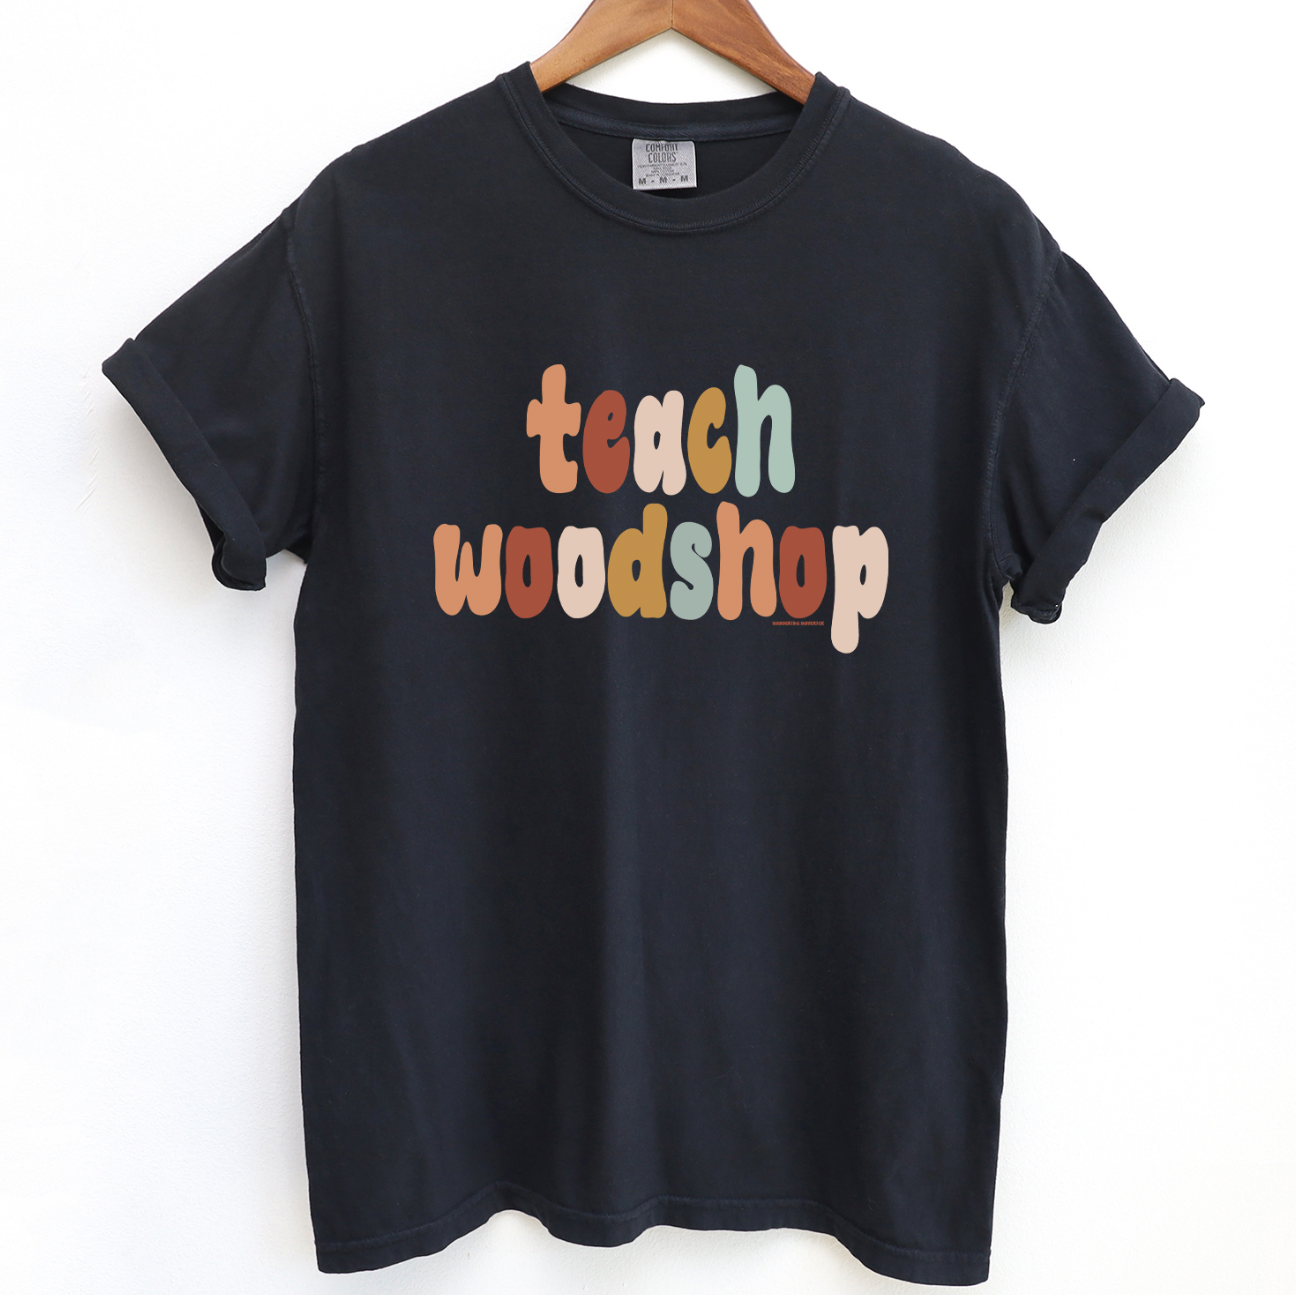 Boho Teach Woodshop ComfortWash/ComfortColor T-Shirt (S-4XL) - Multiple Colors!